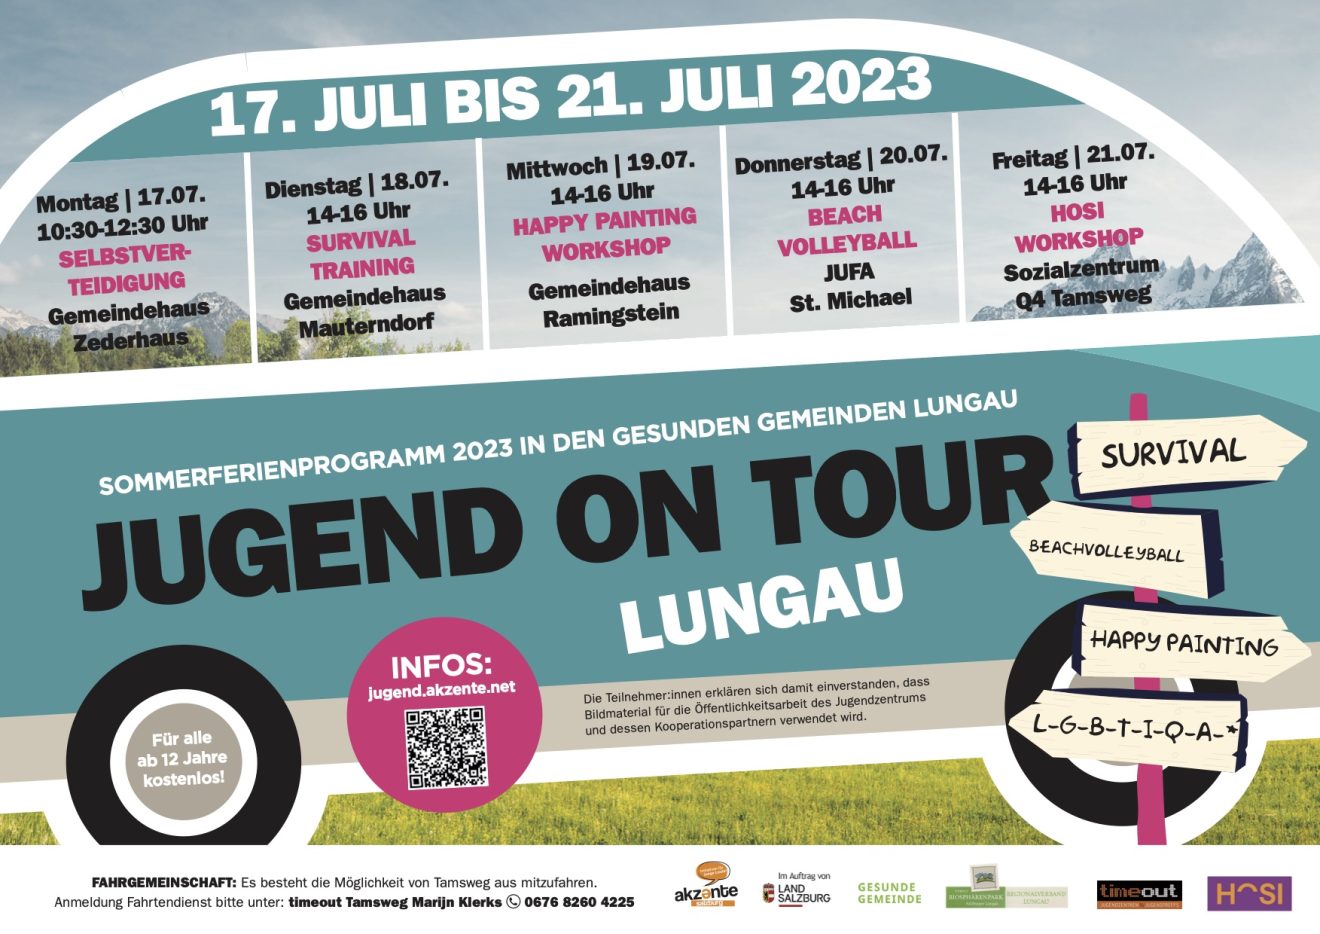 Jugend on tour 2023 - Sommerferienprogramm in den Gesunden Gemeinden Lungau